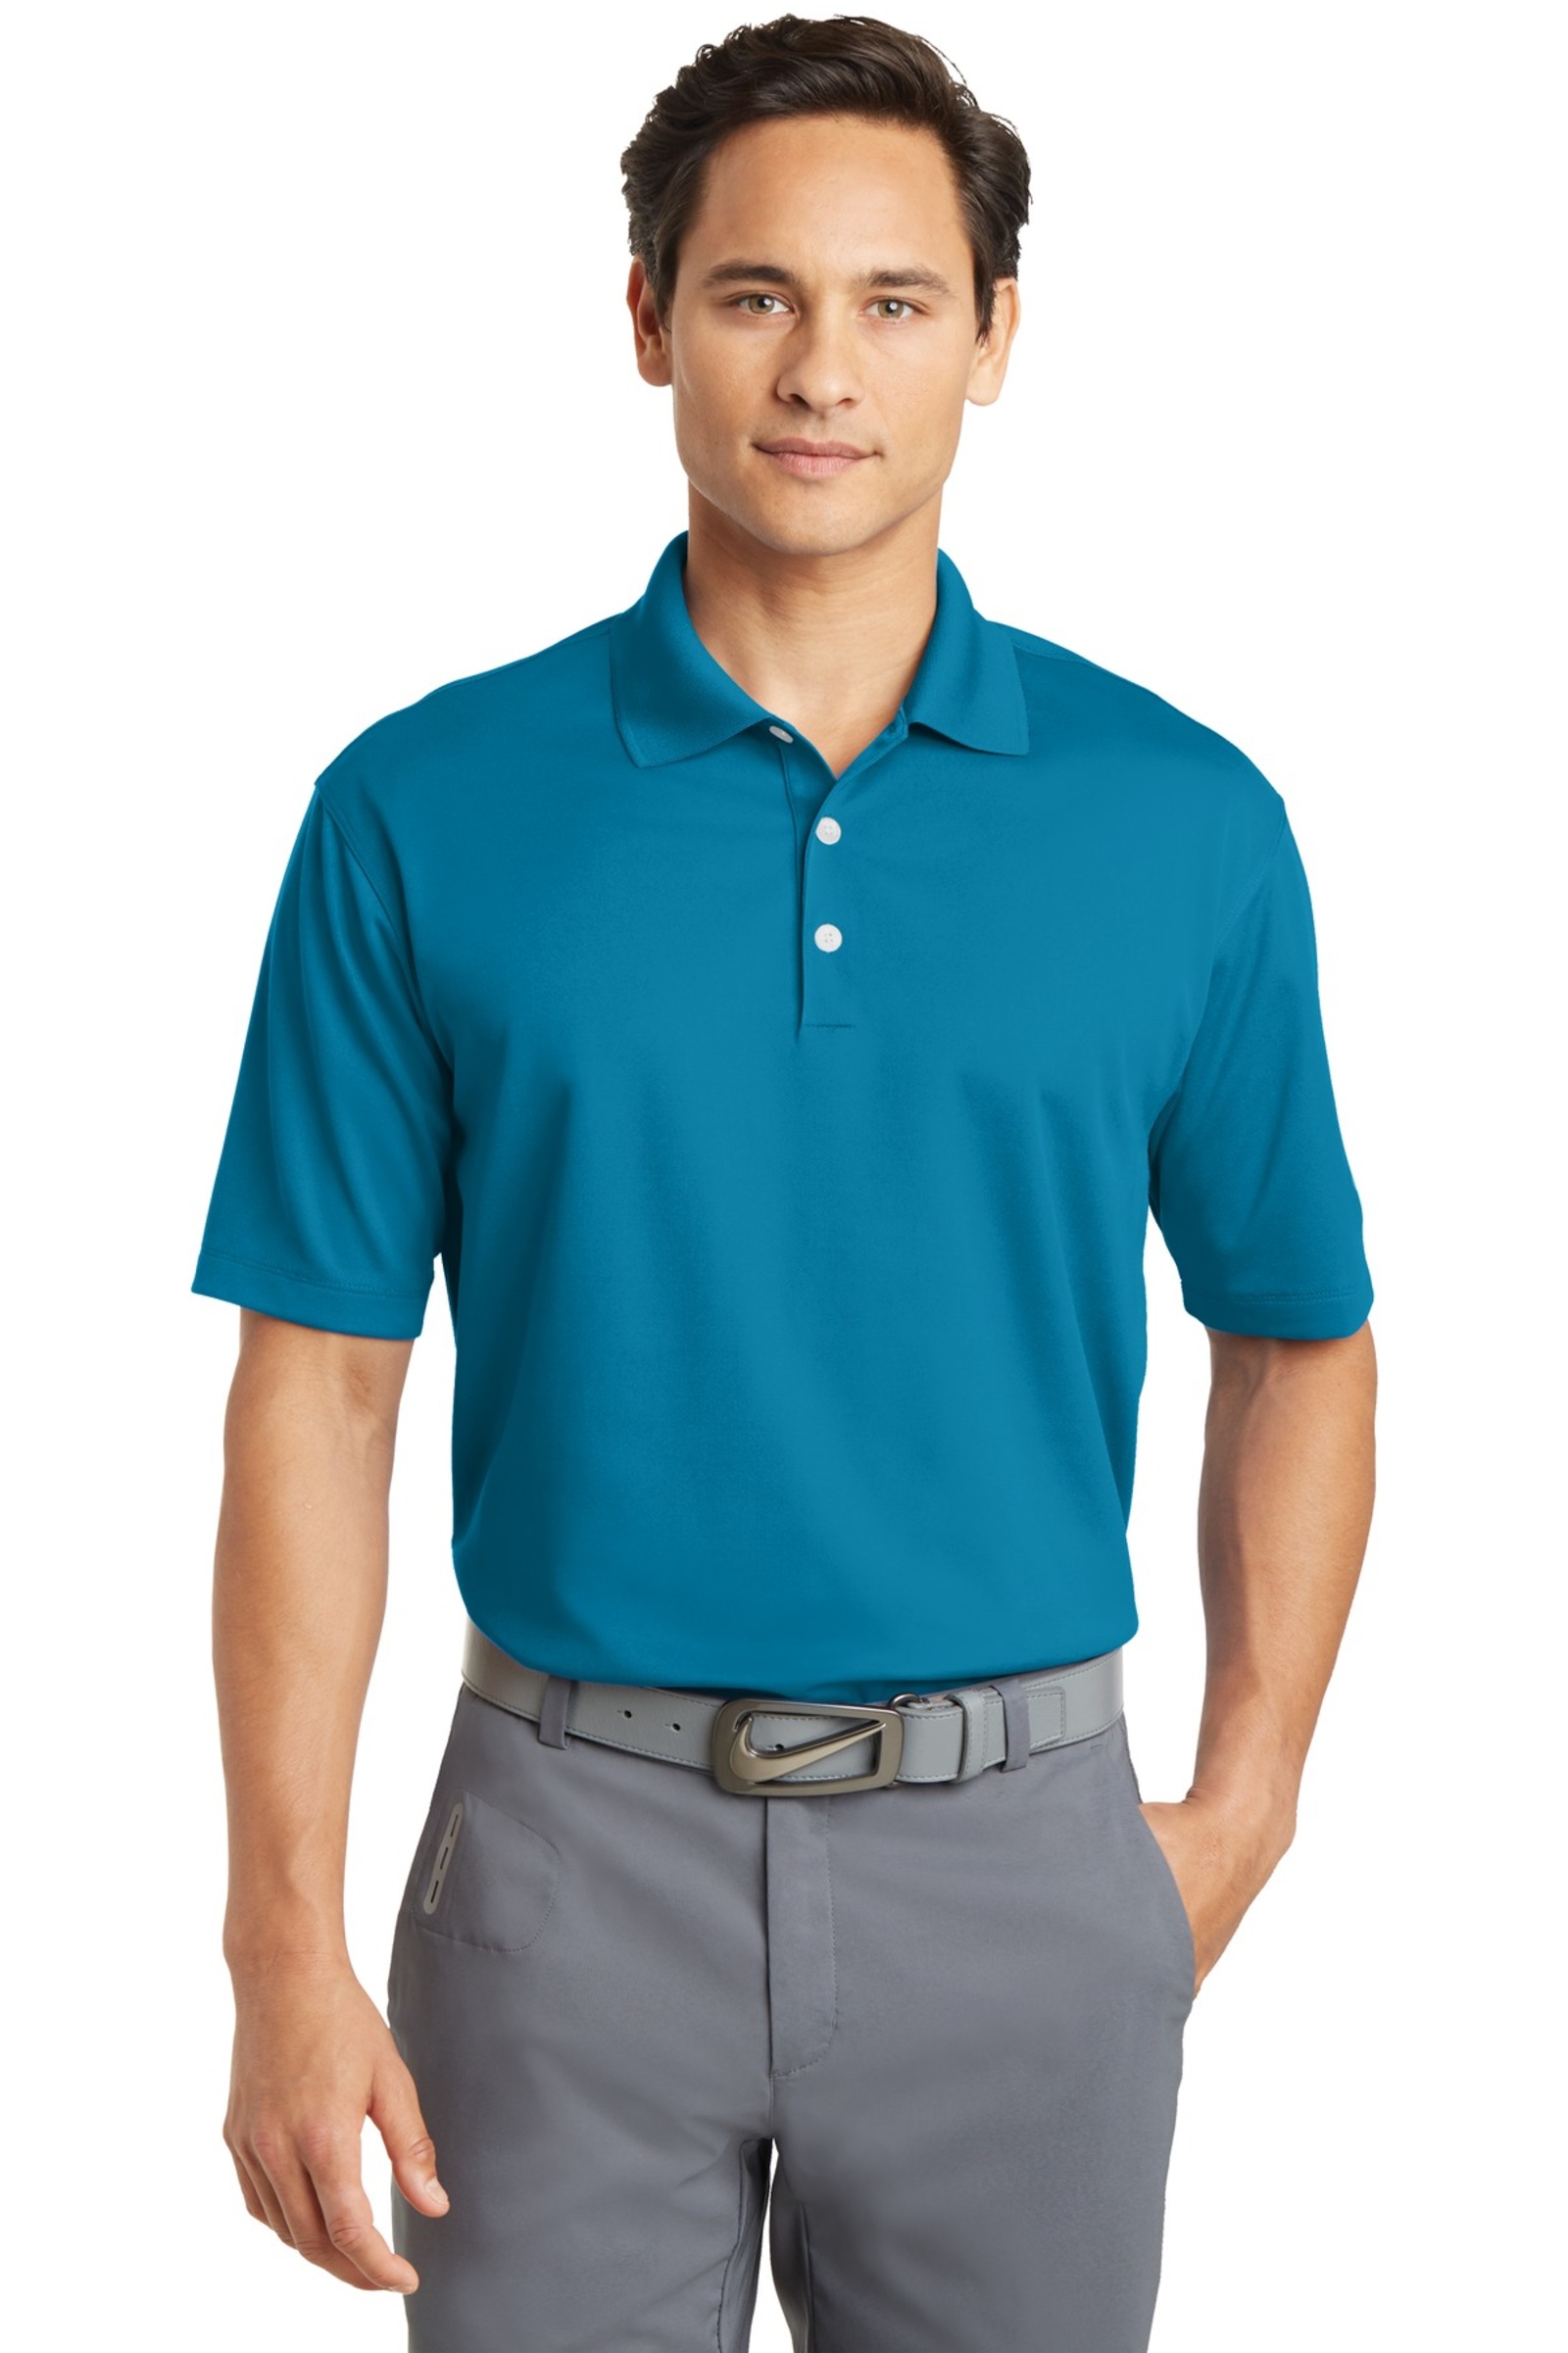 Nike Golf Embroidered Men's Tall Dri-FIT Micro Pique Polo - Queensboro